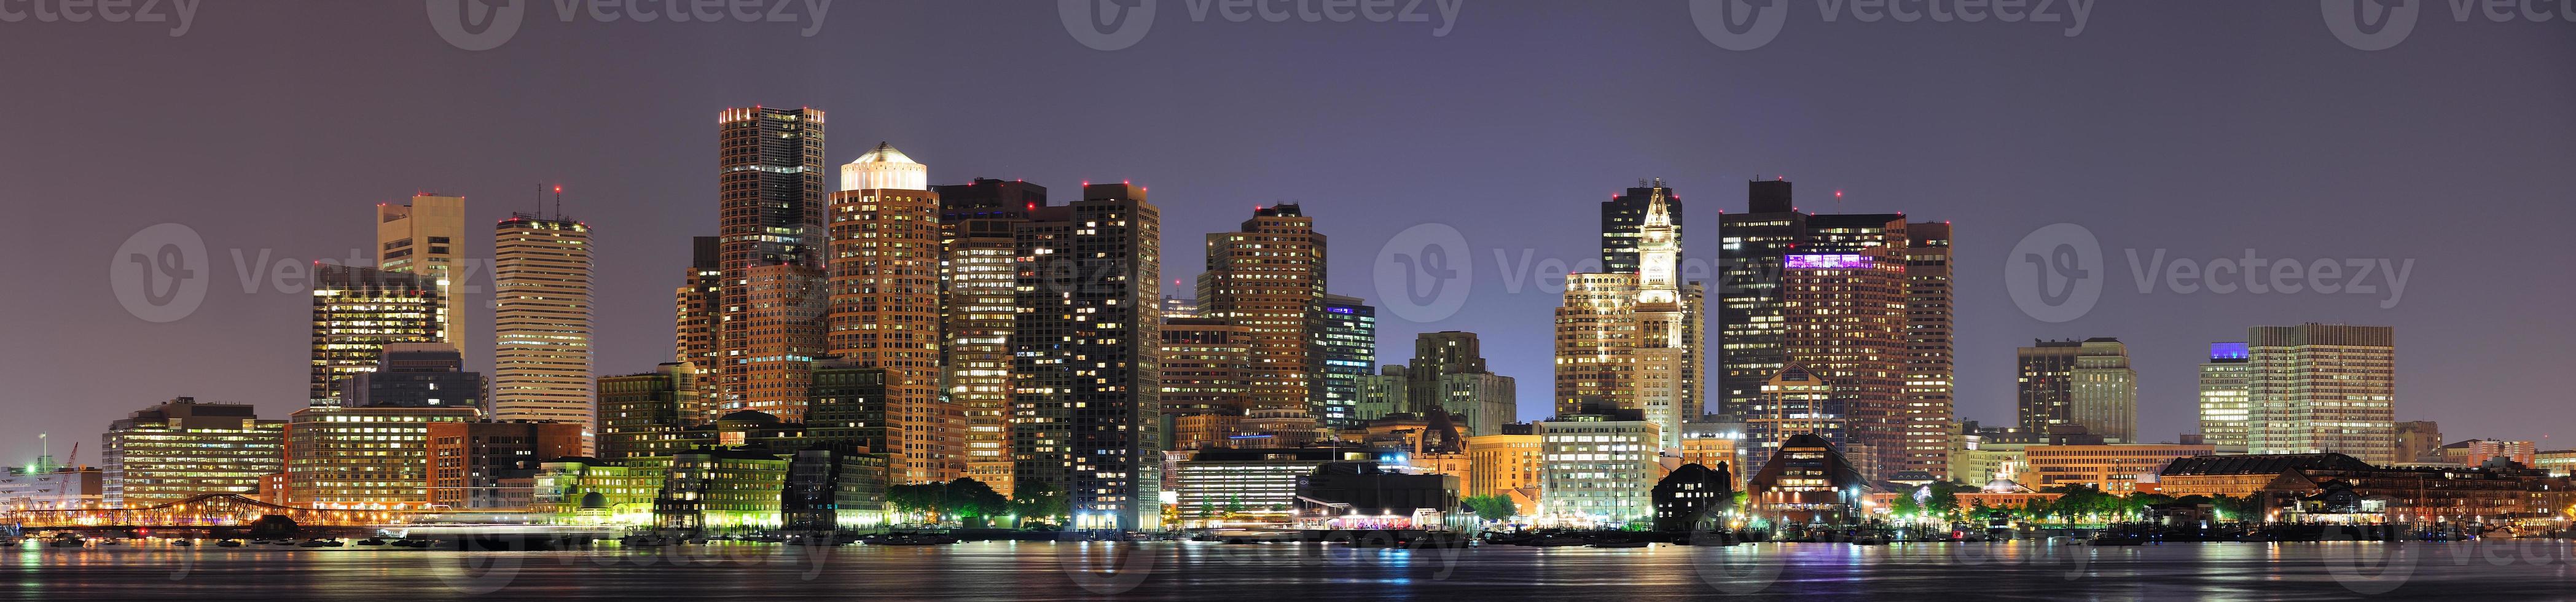 Boston, Massachusetts view photo